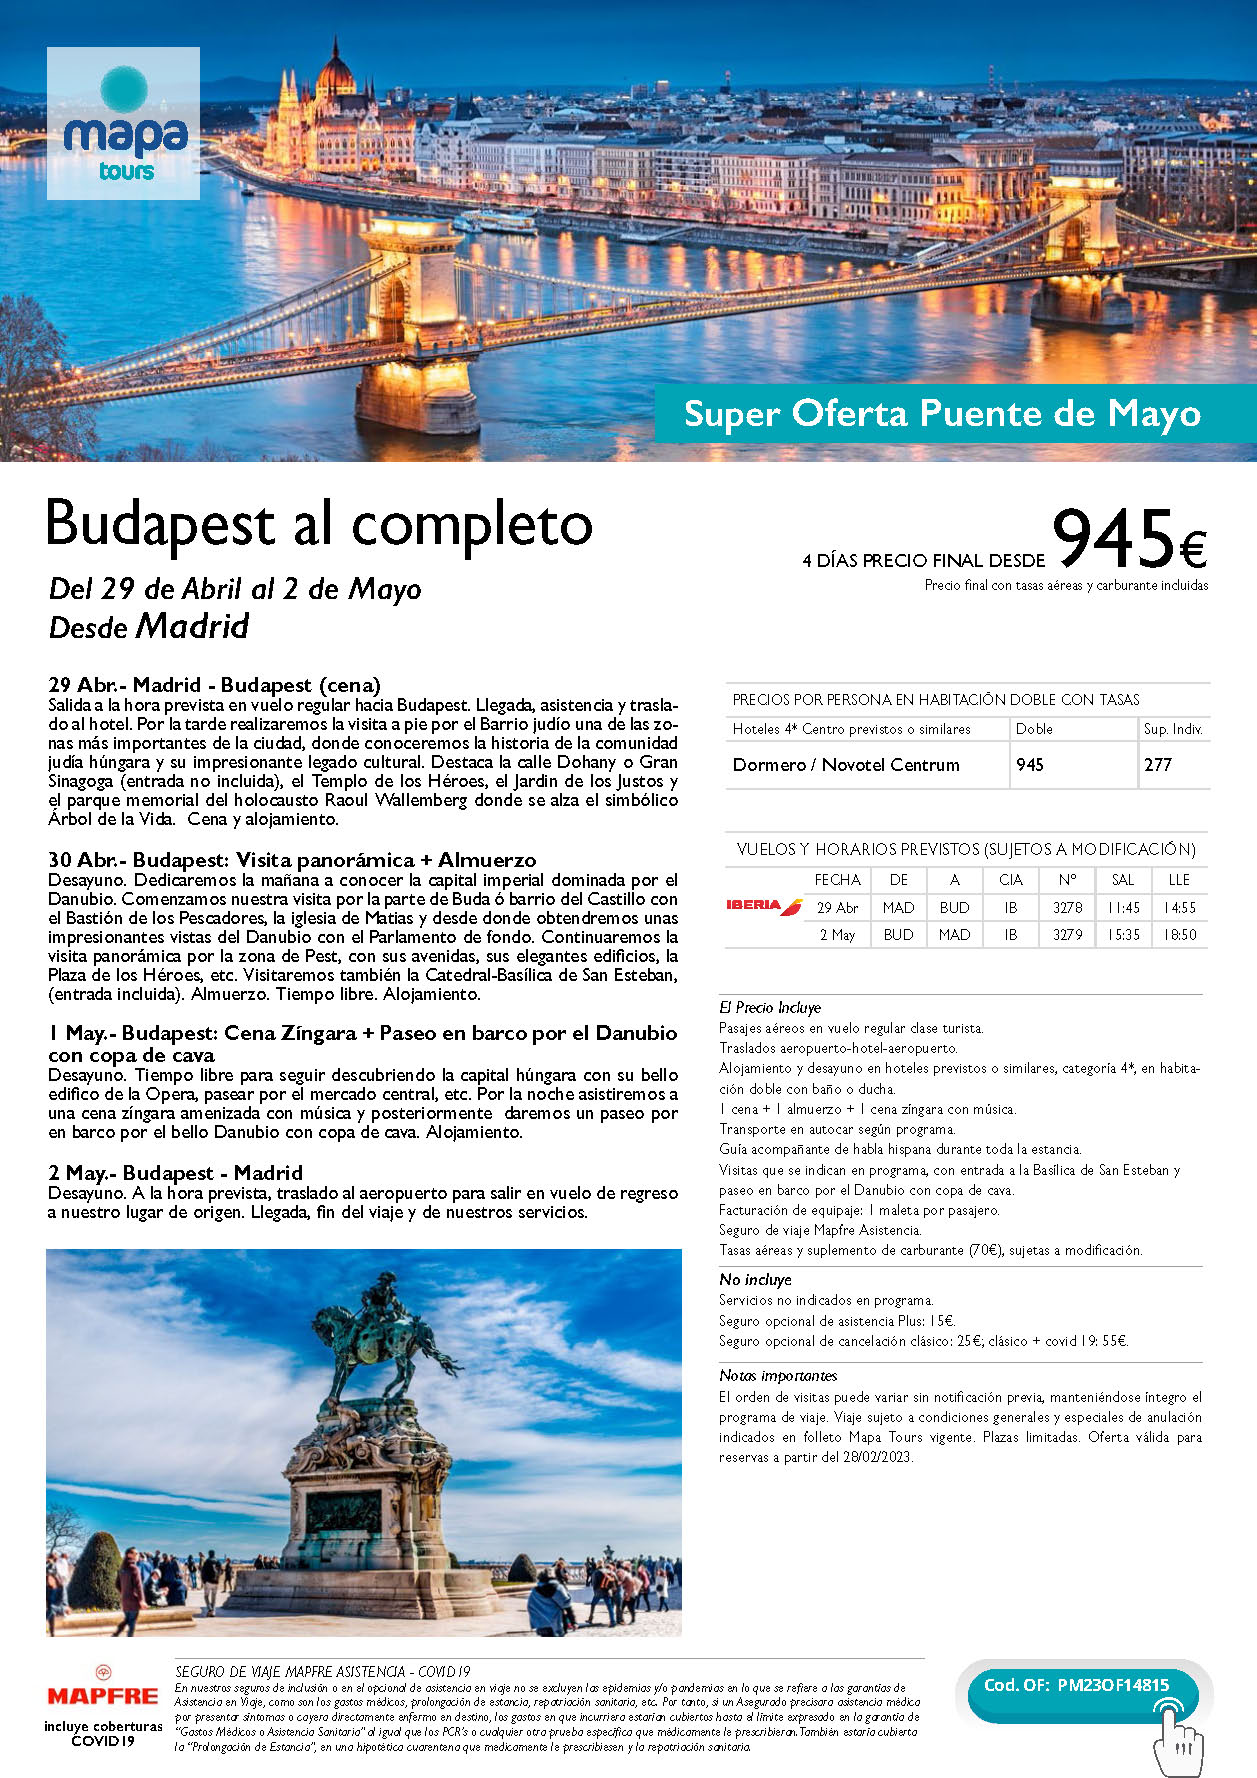 Oferta Mapa Tours Puente de Mayo 2023 Budapest al completo 4 dias salida 29 abril en vuelo directo desde Madrid